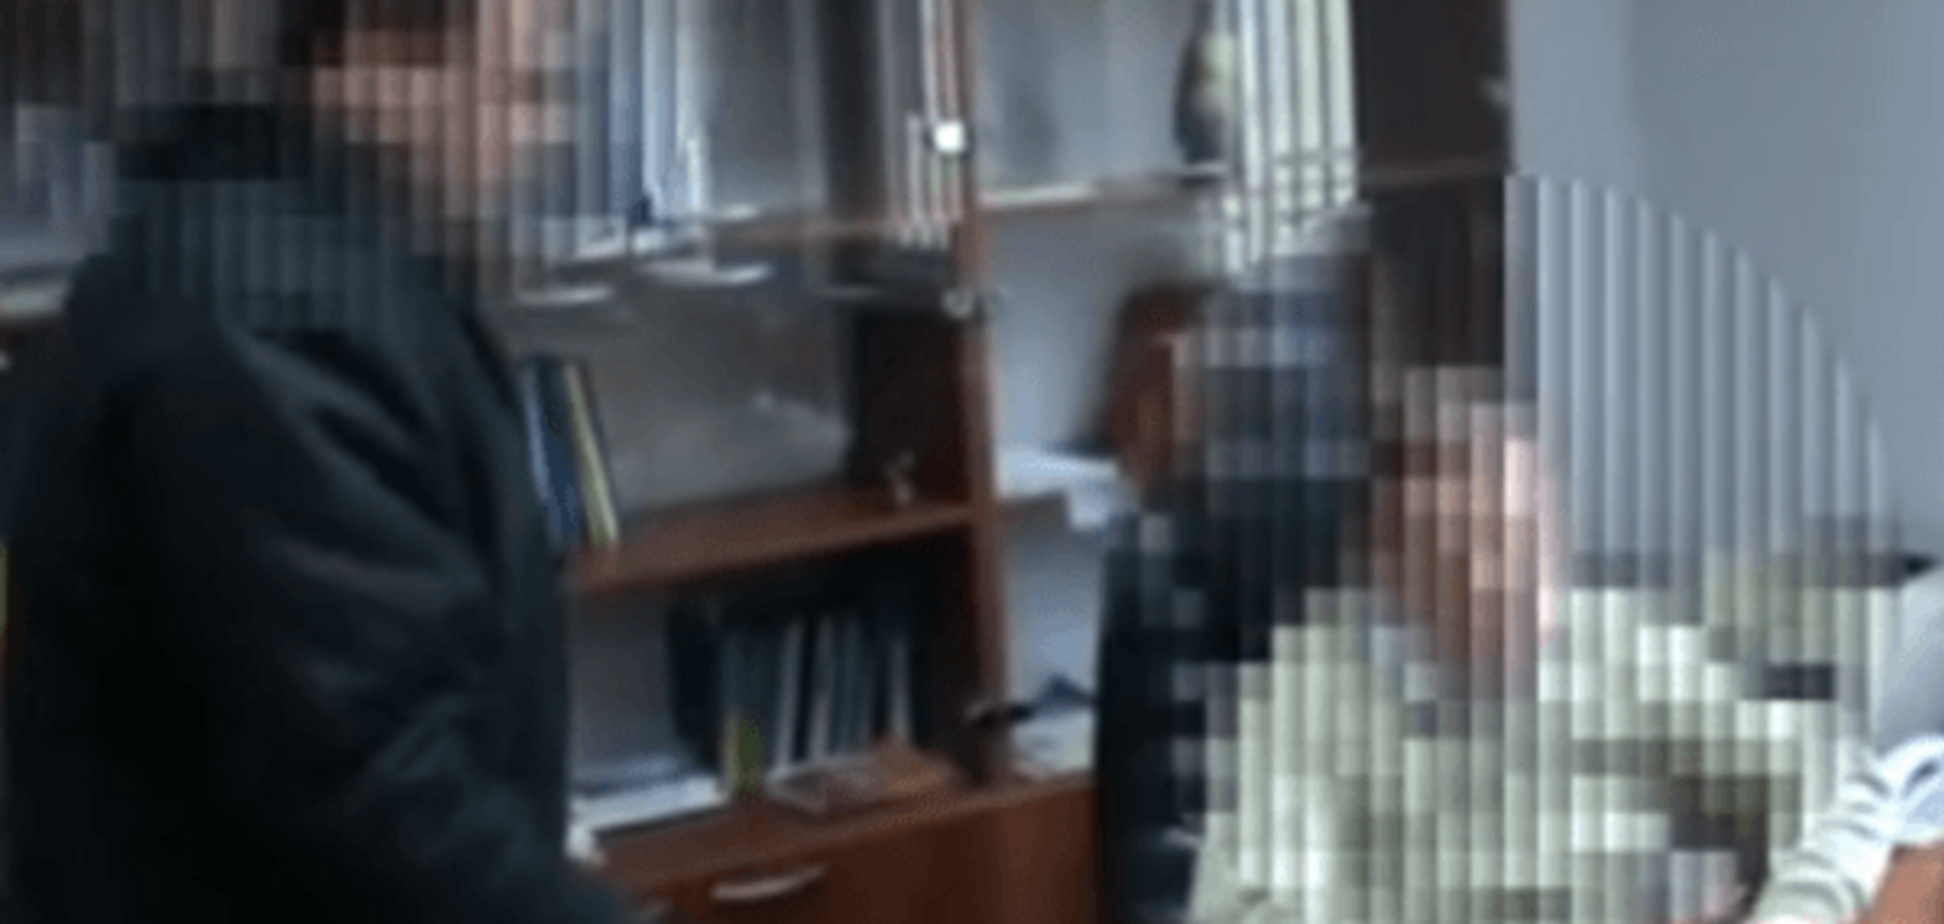 Сакварелидзе показал судью, 'отобравшего' наследство у несовершеннолетних: видеофакт